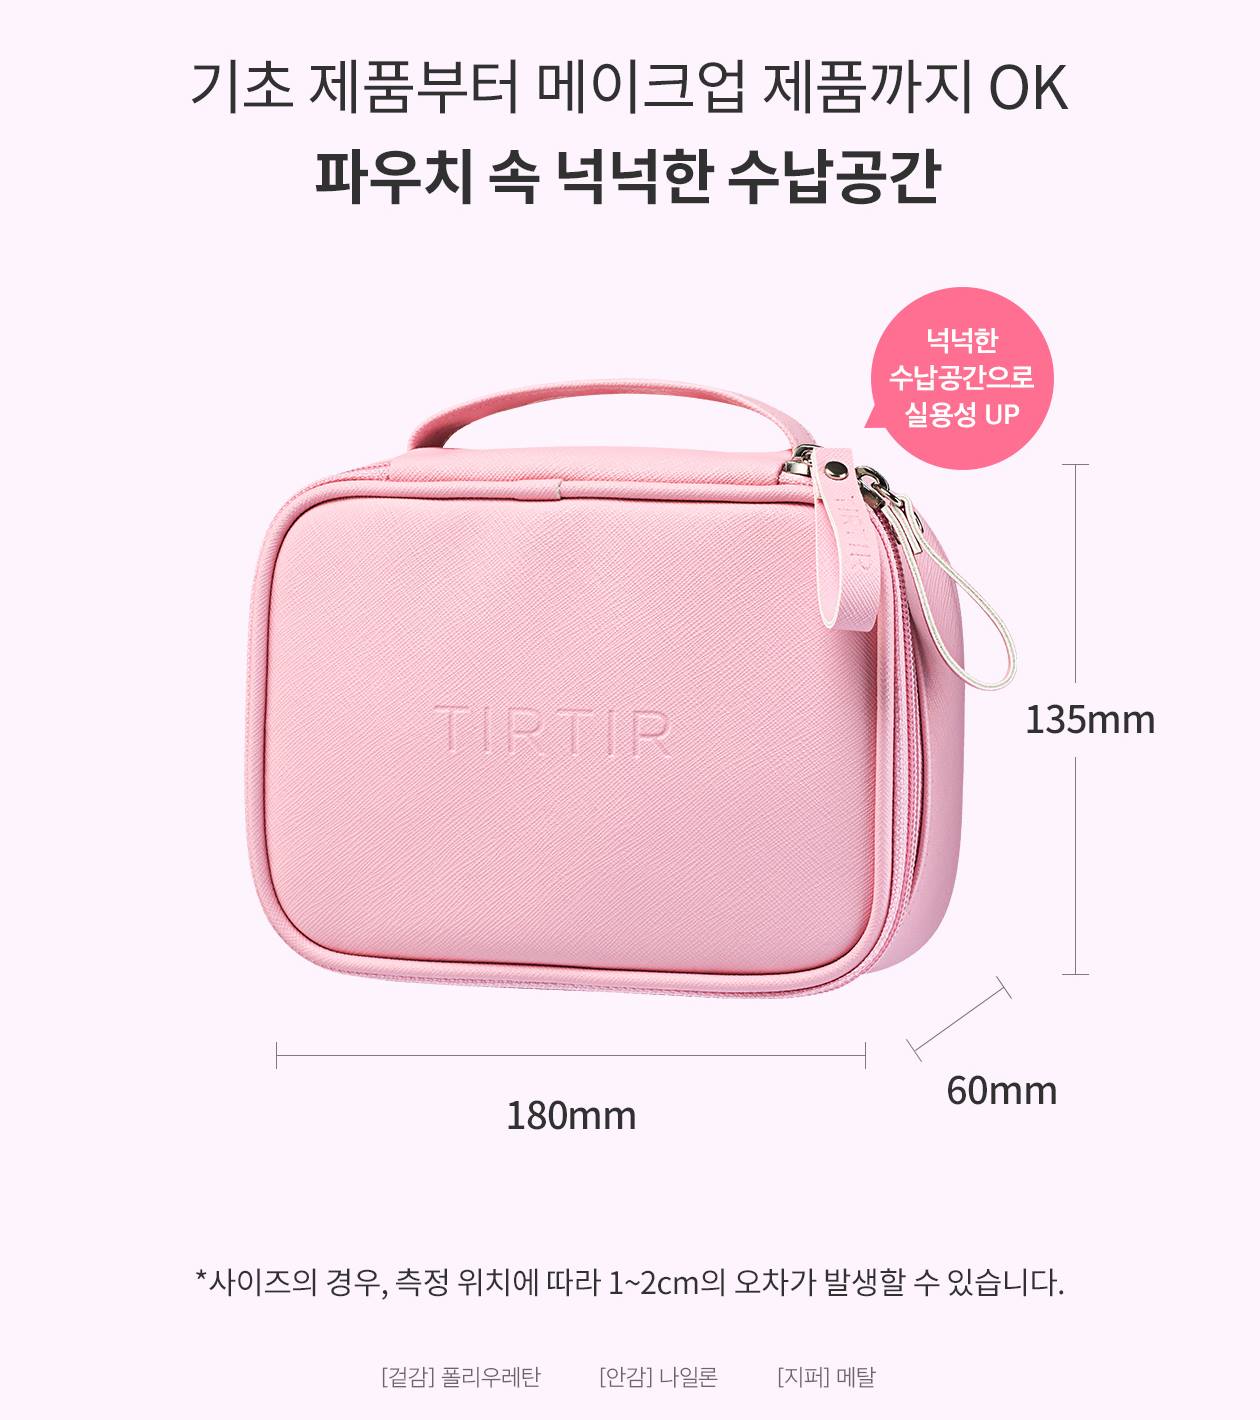 TIRTIR Play Pink Pouches Zipper Makeup Beauty Bags Womens Travel Trip